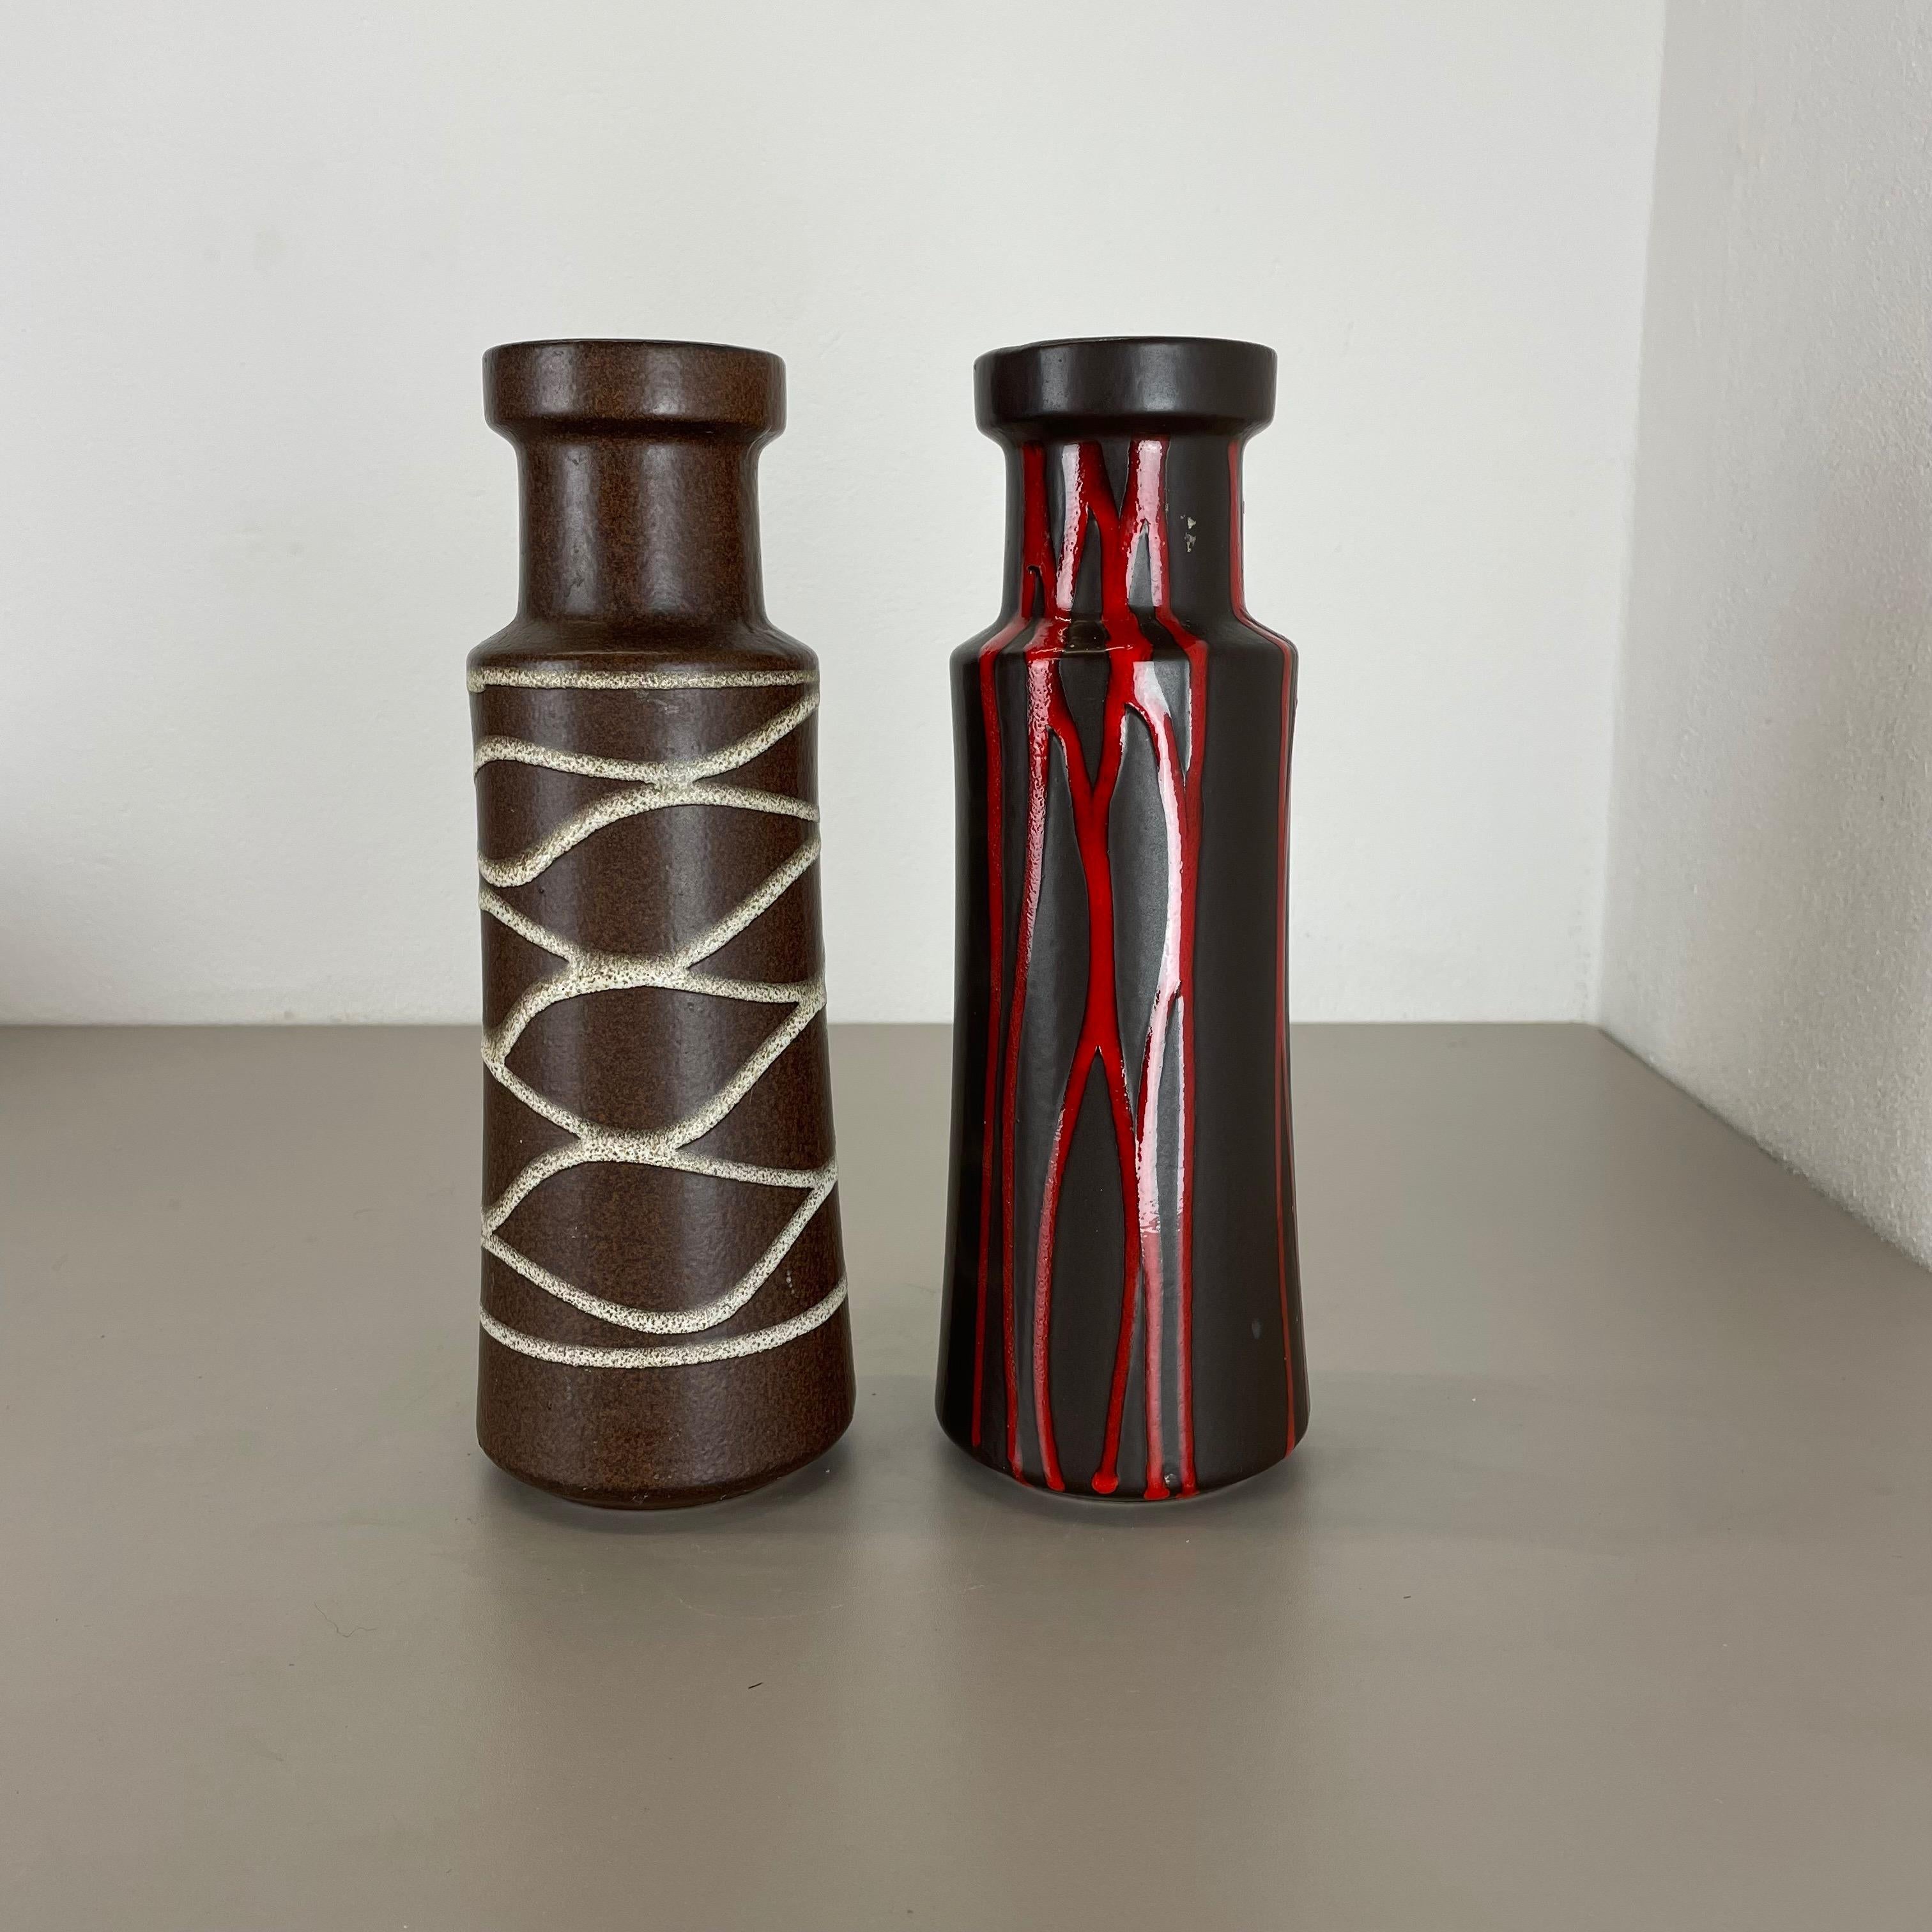 Artikel:

Set aus zwei fetten Lavakunstvasen


Produzent:

Scheurich, Deutschland



Jahrzehnt:

1970s




Diese originalen Vintage-Vasen wurden in den 1970er Jahren in Deutschland hergestellt. Sie ist aus Keramik in fetter Lava-Optik gefertigt.